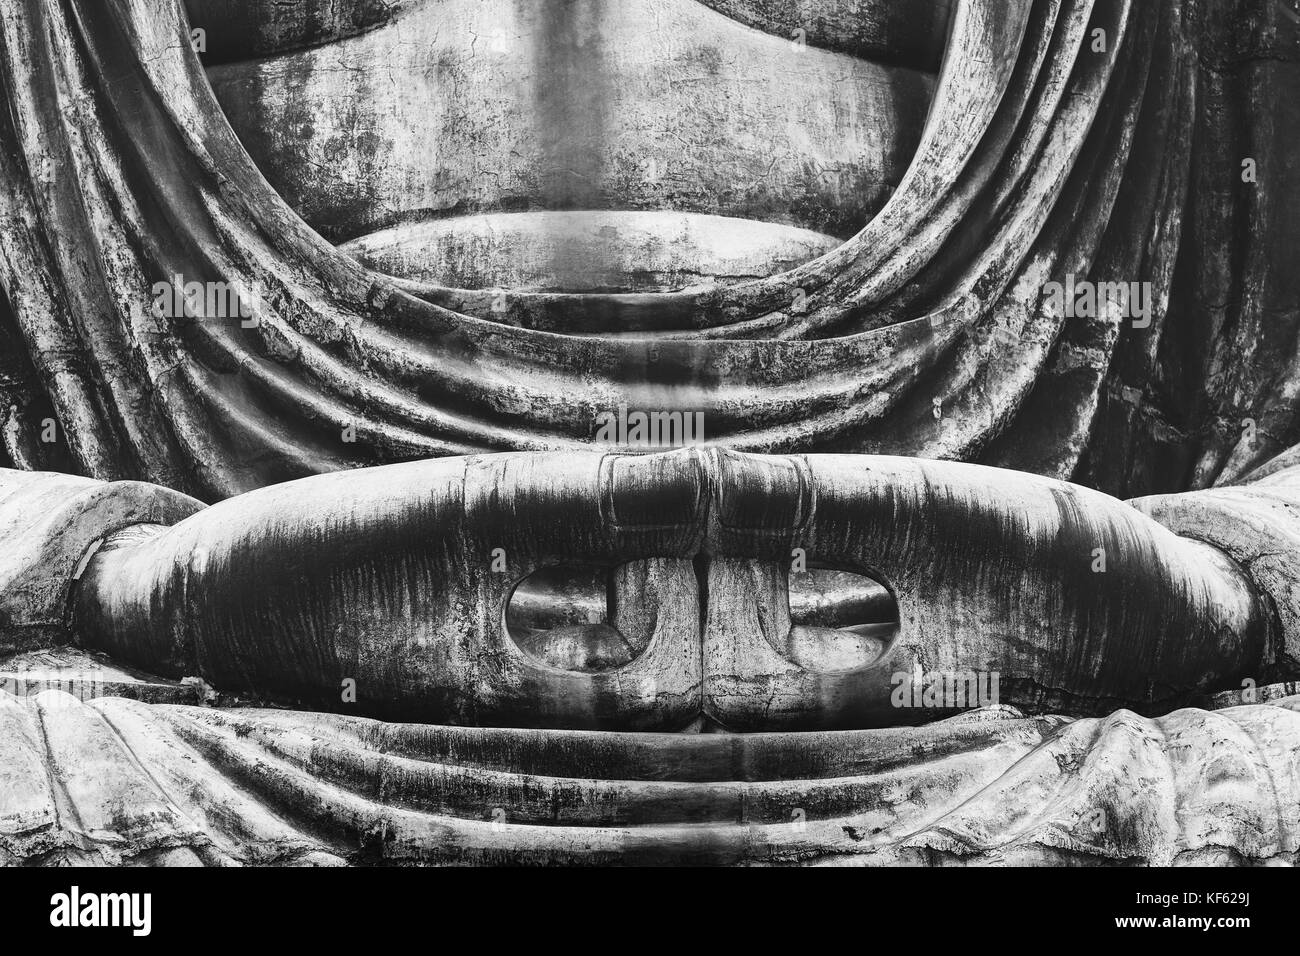 Gros plan du corps et mains d'maditating daibutsu (grand Bouddha Bouddha Amida) statue de kotokuin temple à Kamakura, tokyo. photo en noir et blanc. Banque D'Images